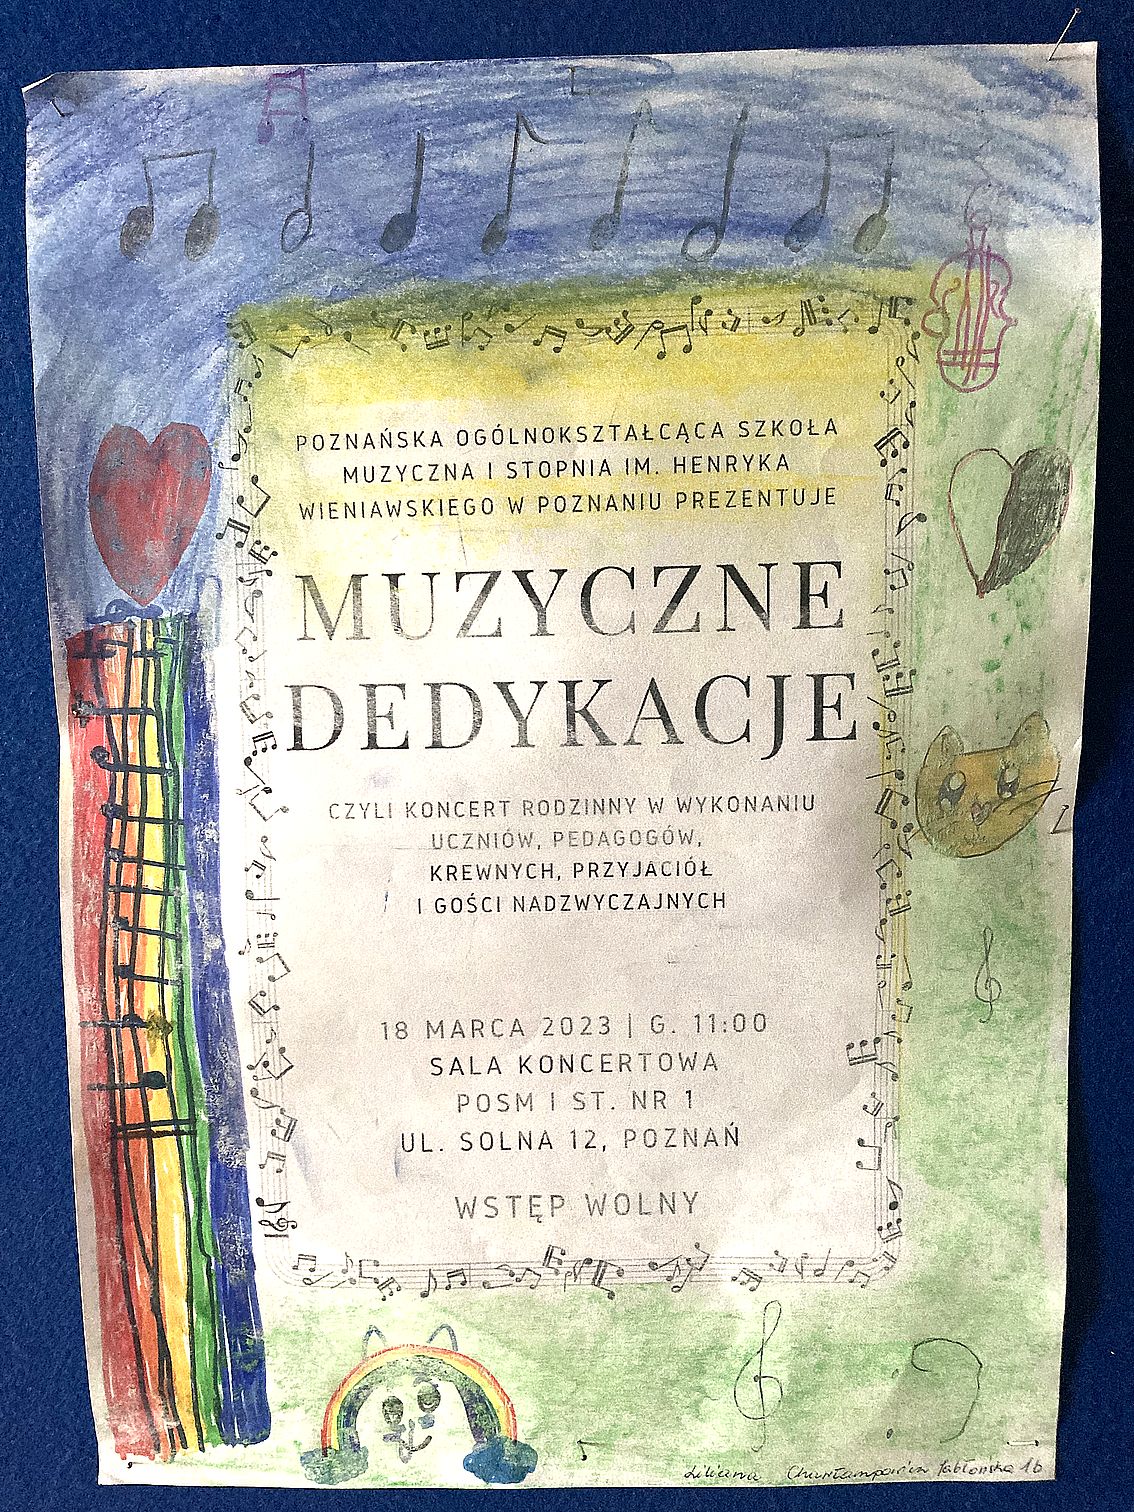 Plakat rysunkowy koncertu "Muzyczne dedykacje".